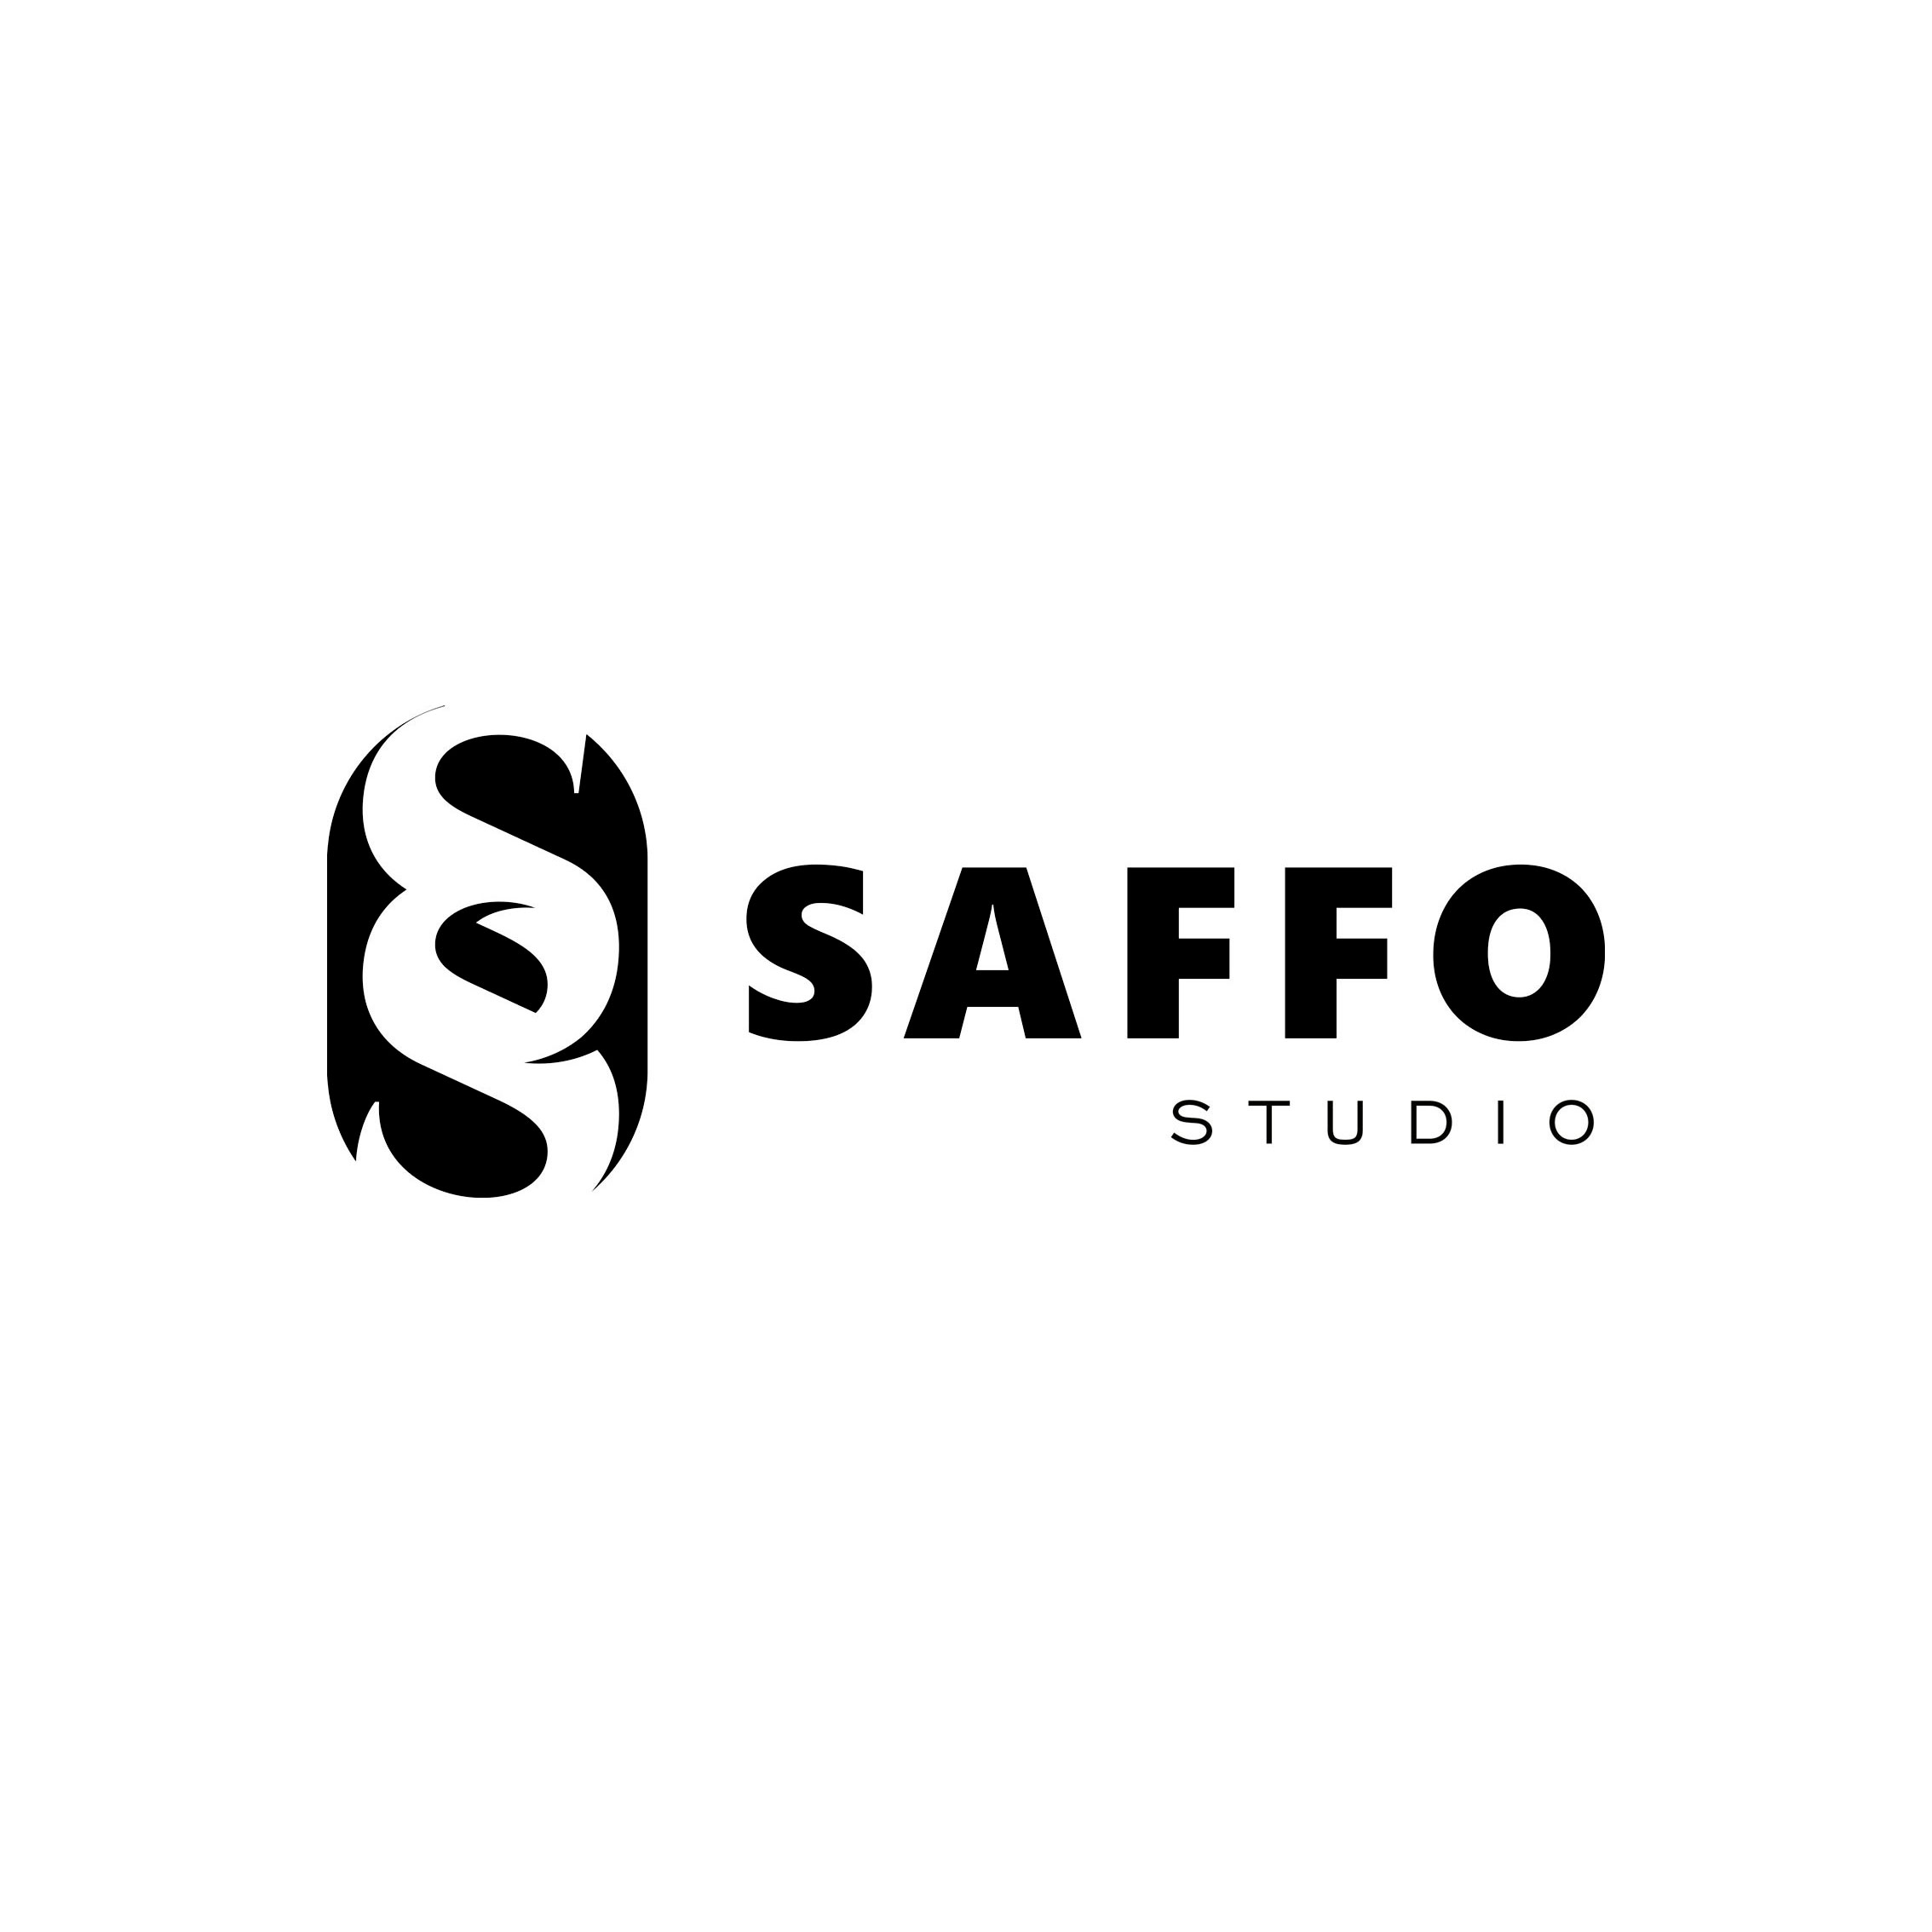 Saffo Studio | Branding Expert